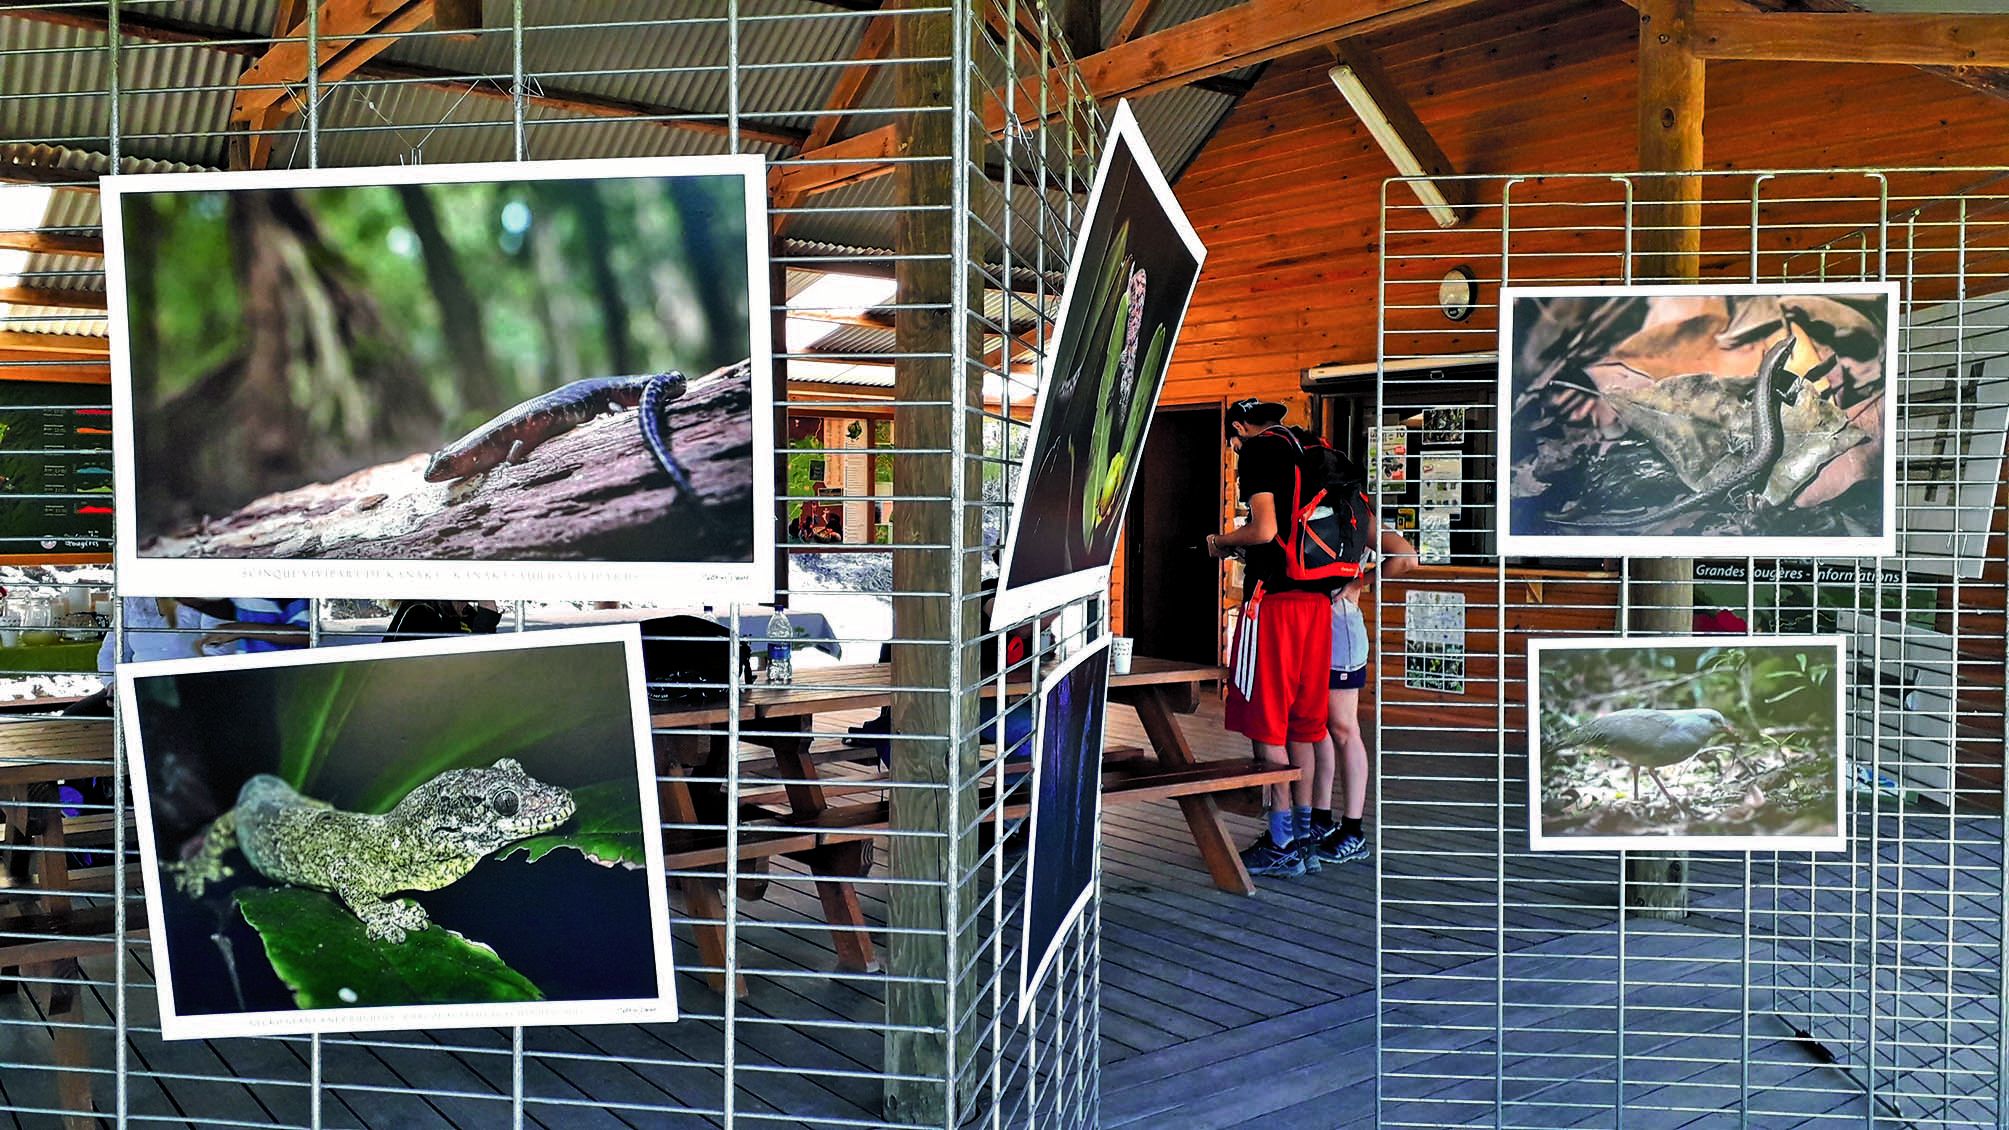 Mathias Dess, un passionné de conservation, a répondu aux questions suscitées par son exposition sur les scinques (lézards) et geckos de Nouvelle-Calédonie, prêtée pour l’occasion par le Parc zoologique et forestier.